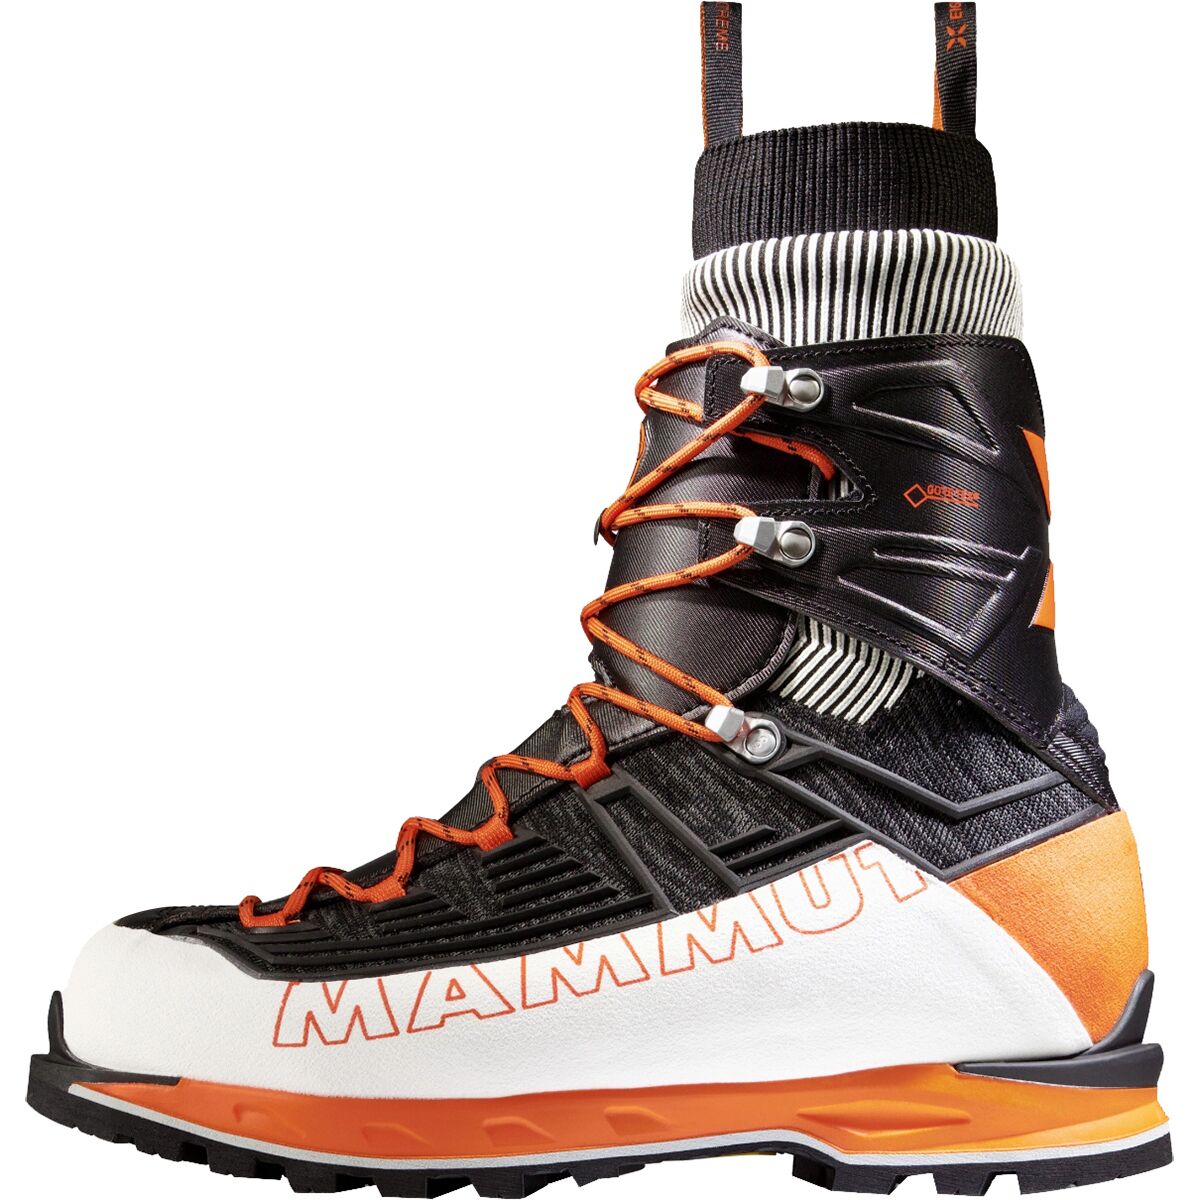 Mammut Nordwand Knit High GTX Mountaineering Boot - Women's